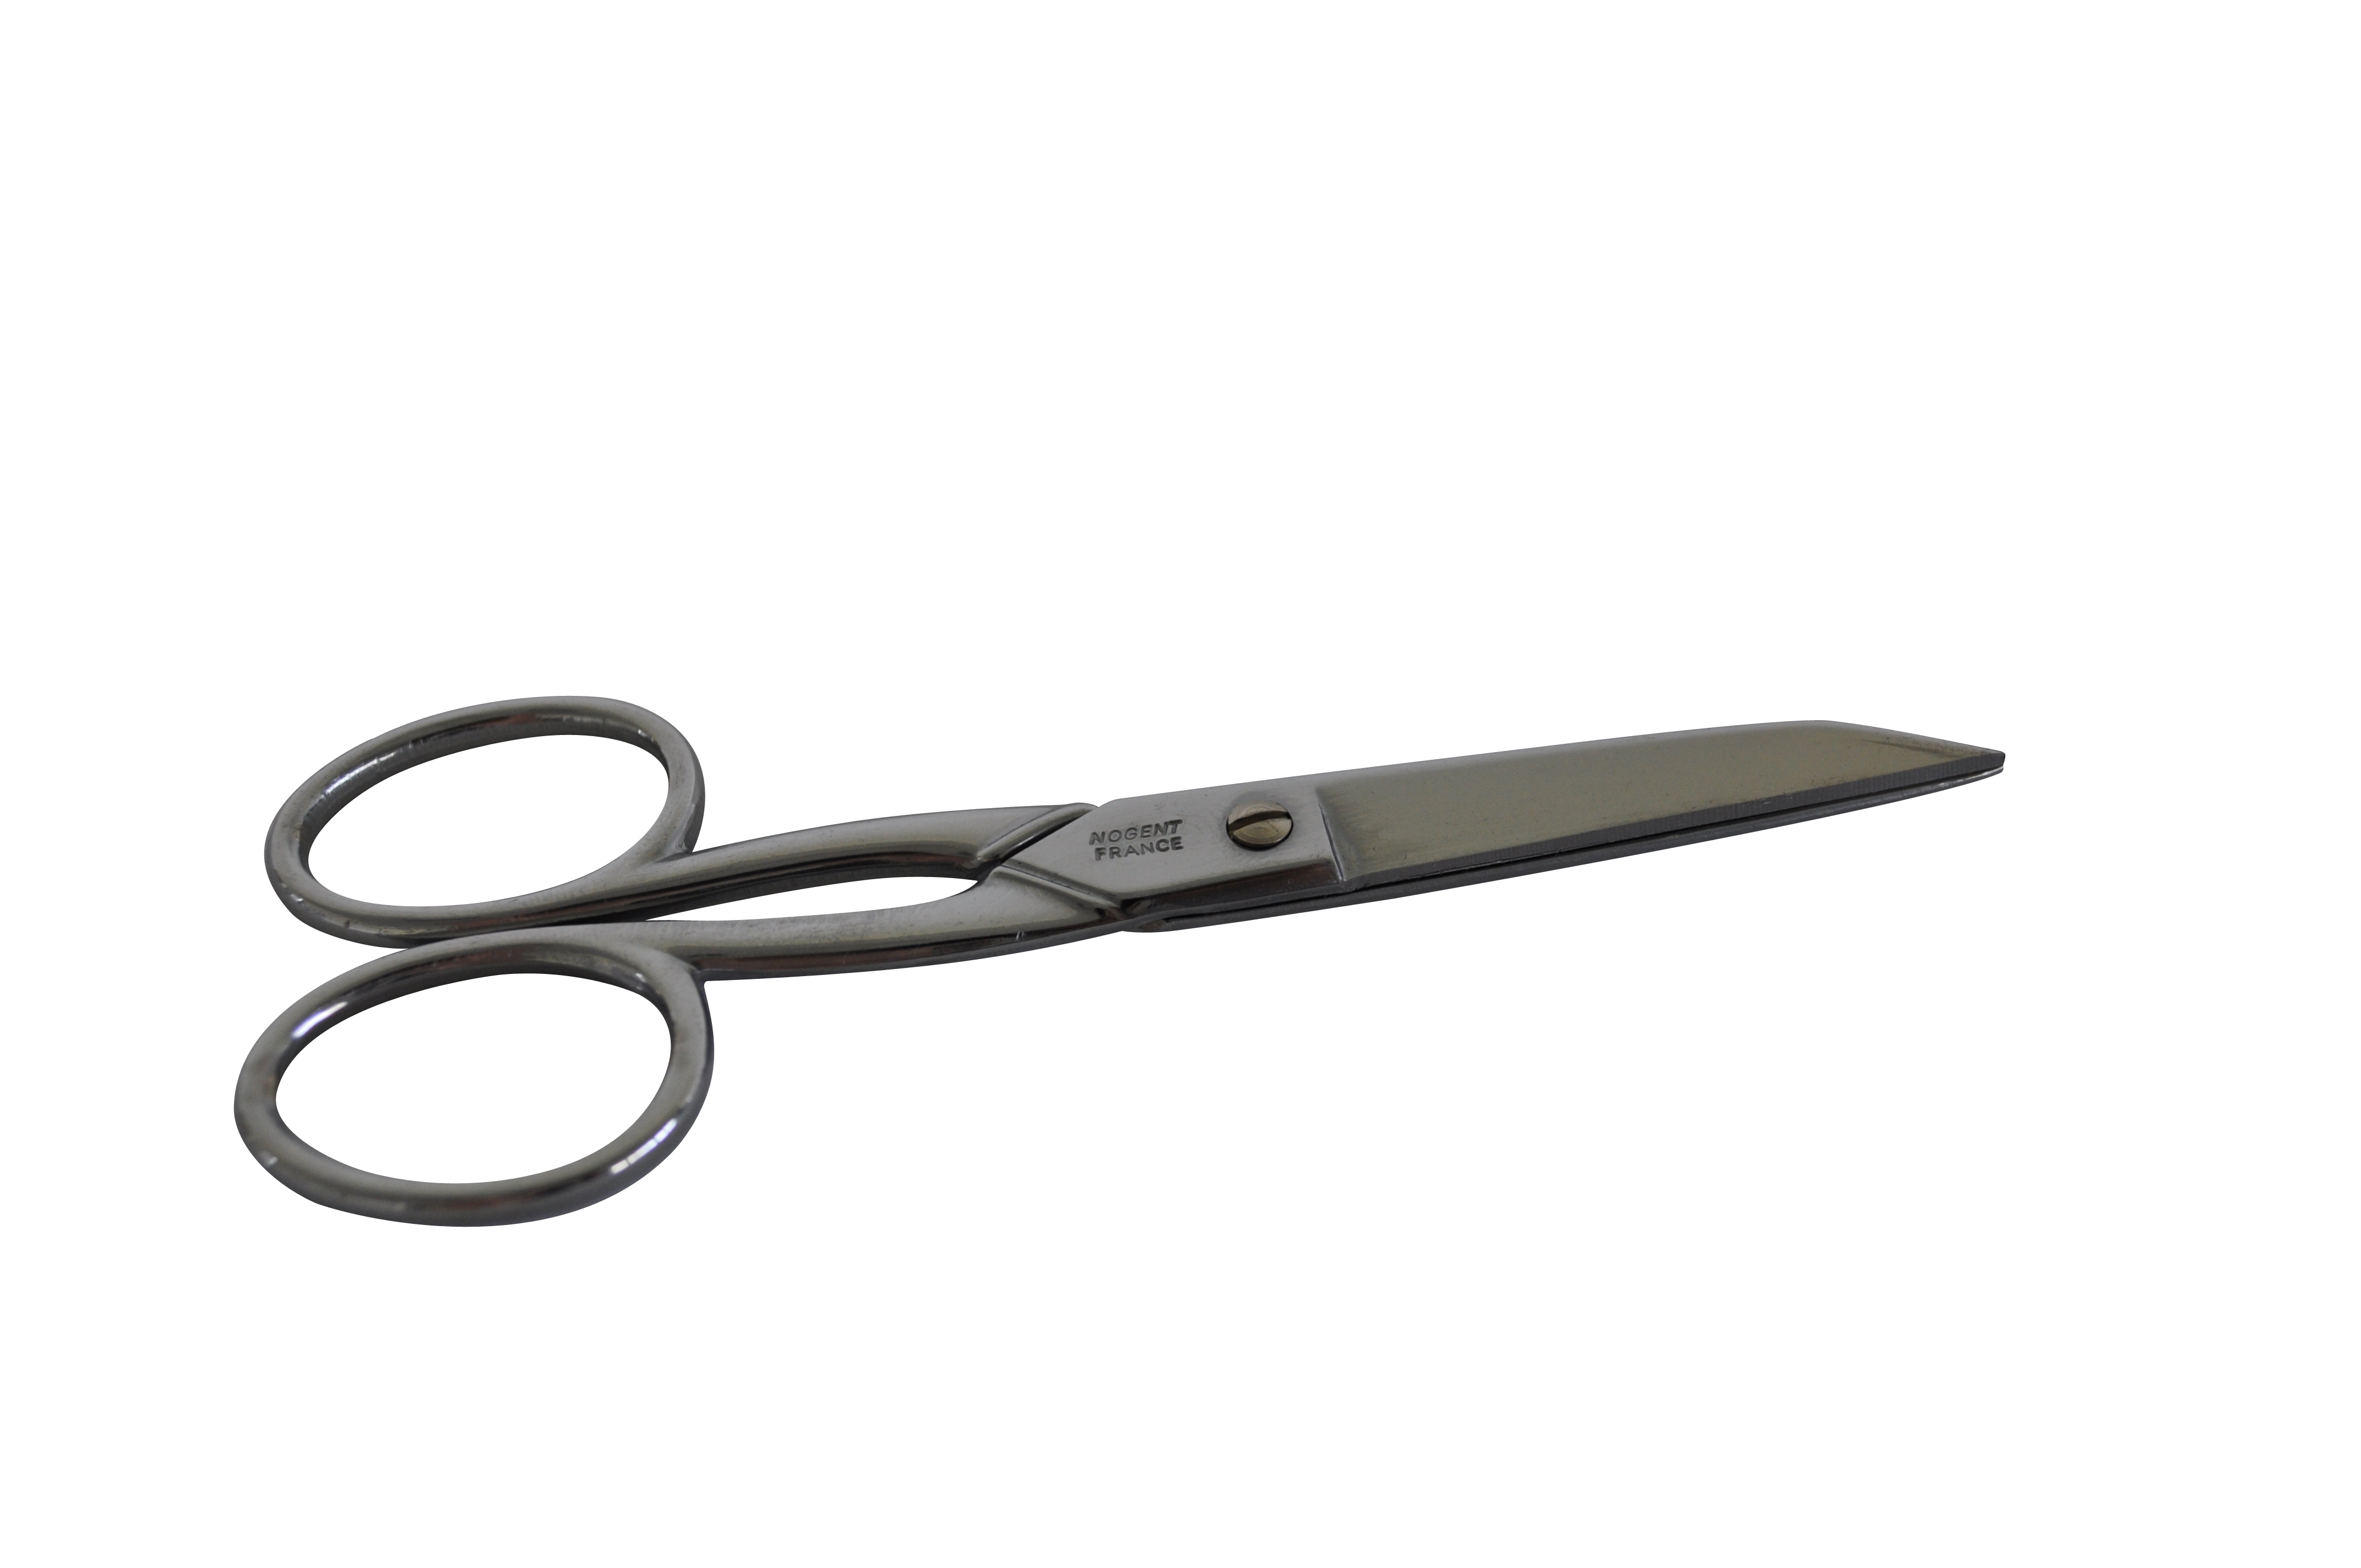 Stainless steel scissors 13cm (sharp)